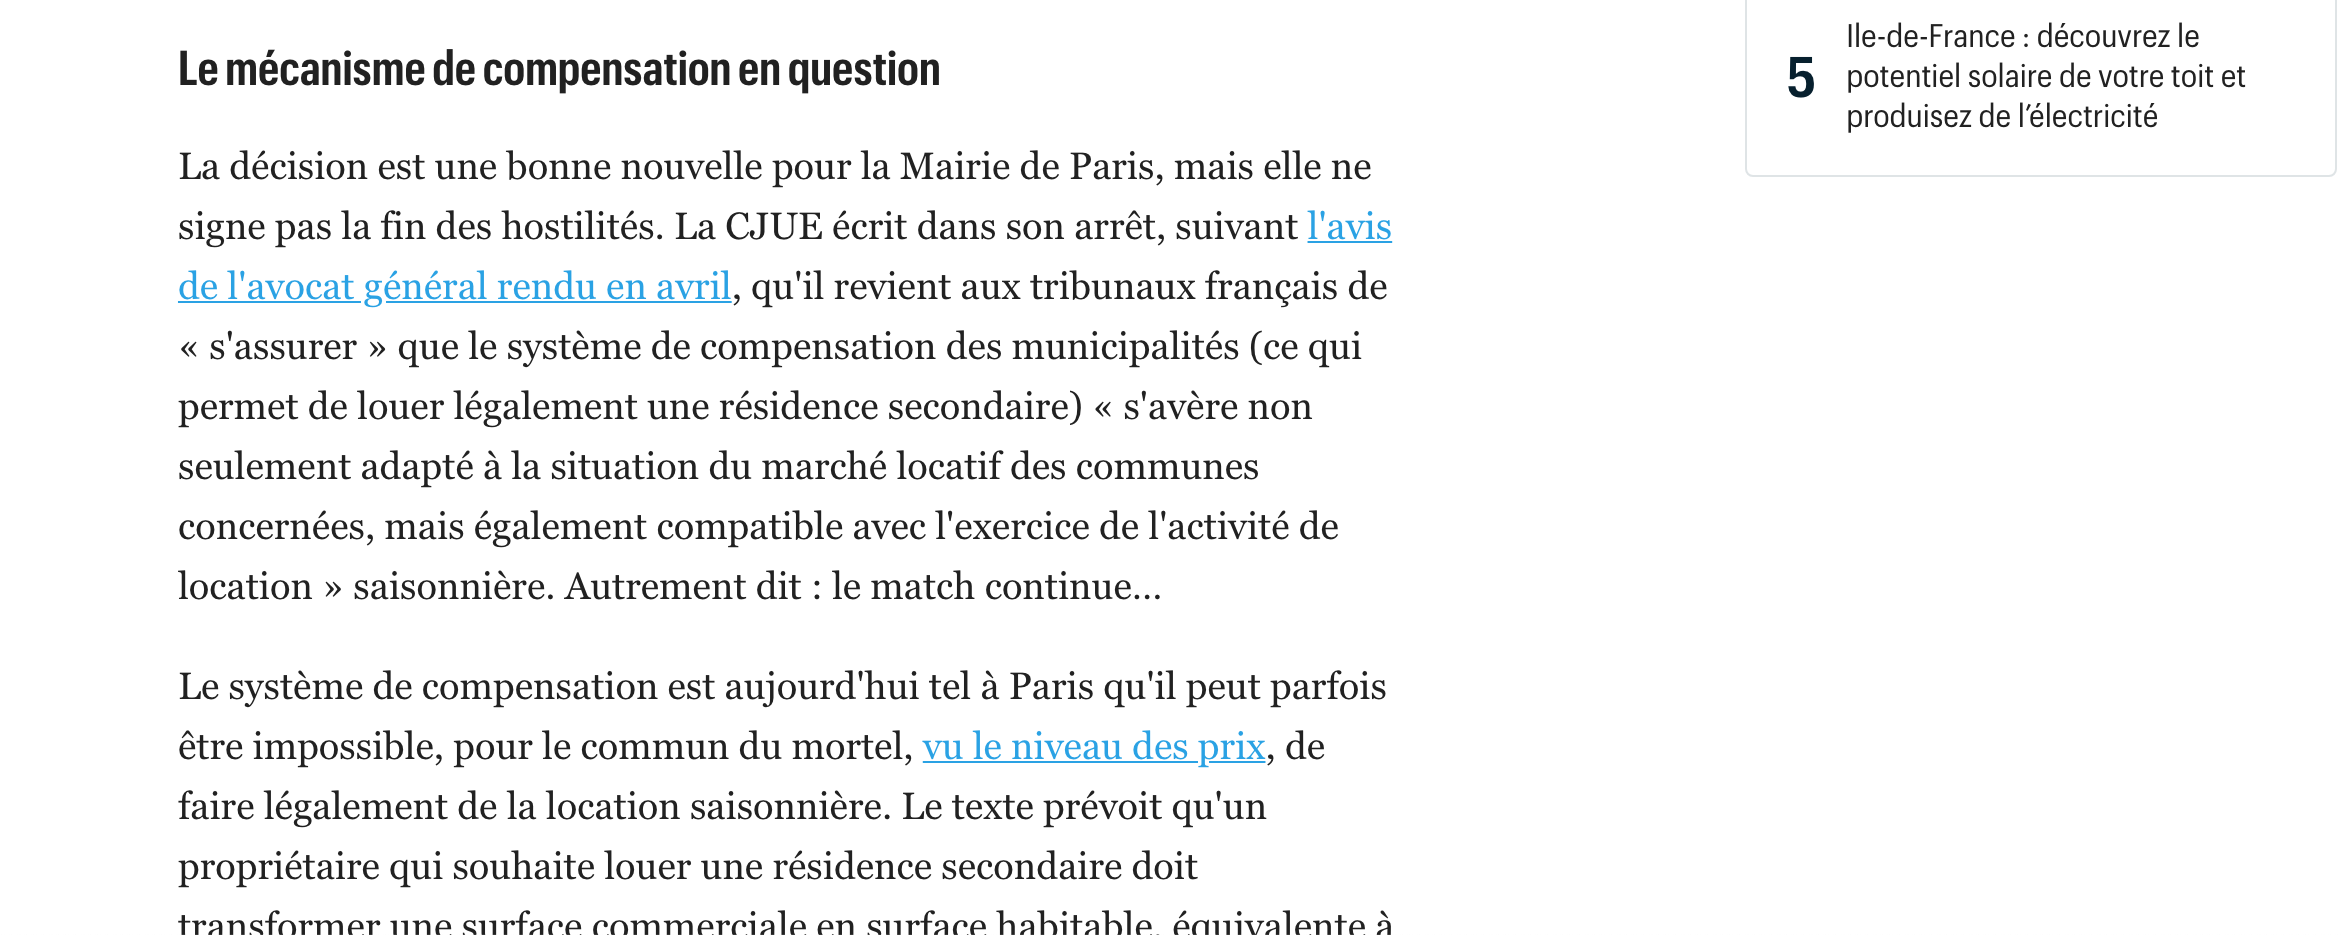 Le Parisien airbnb CJUE ville de paris 